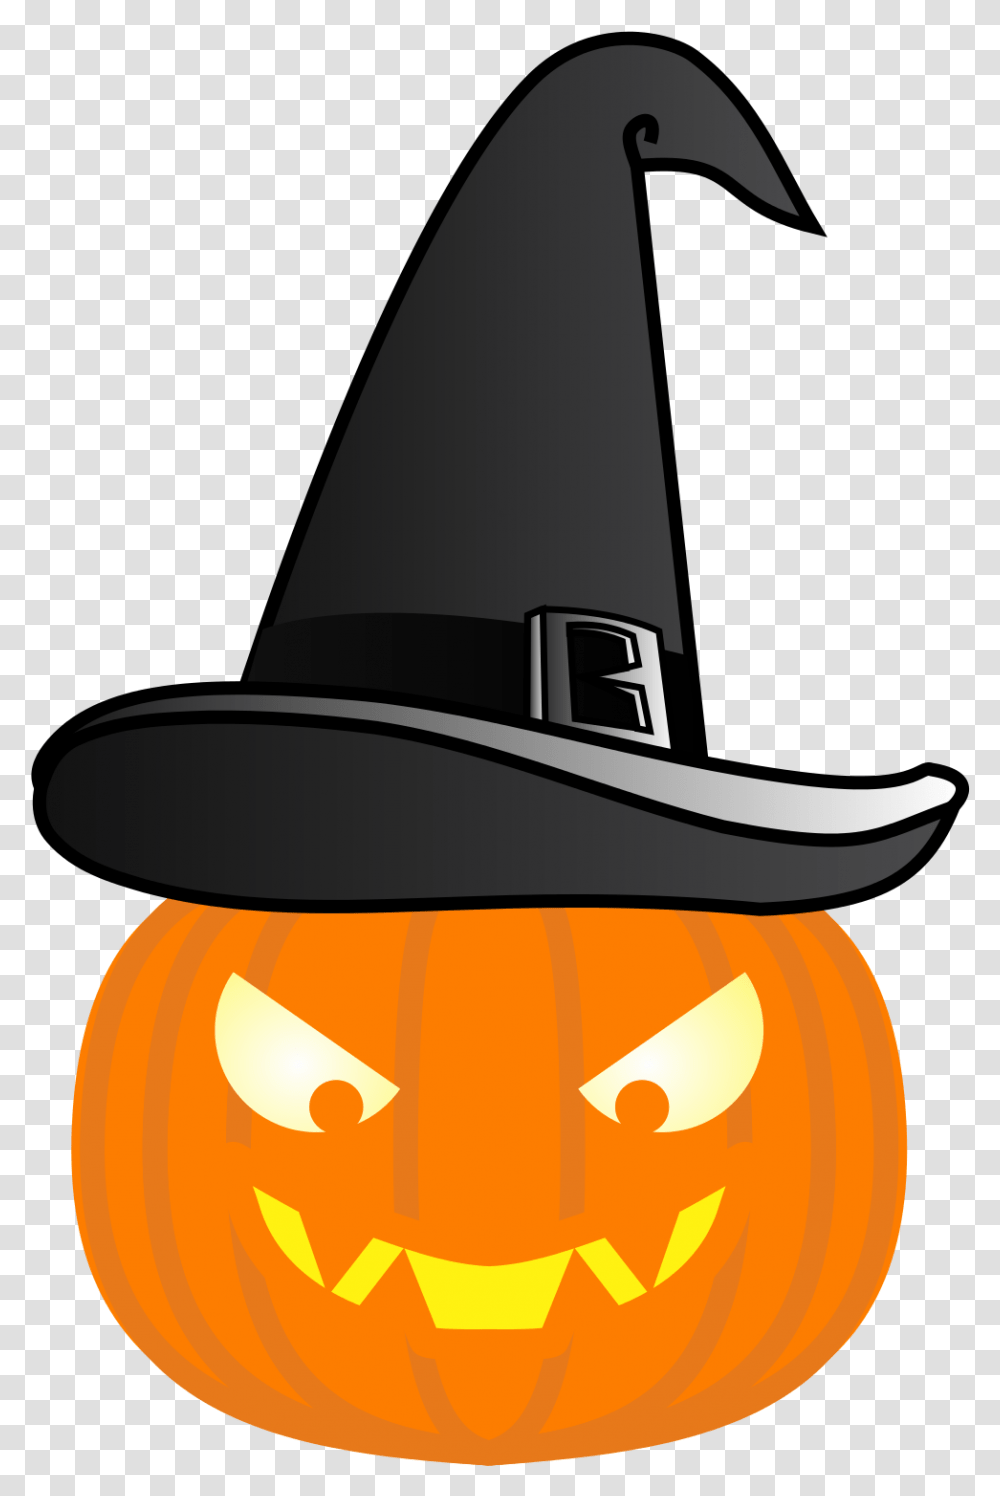 Chapeu De Bruxa Halloween, Apparel, Hat, Cowboy Hat Transparent Png